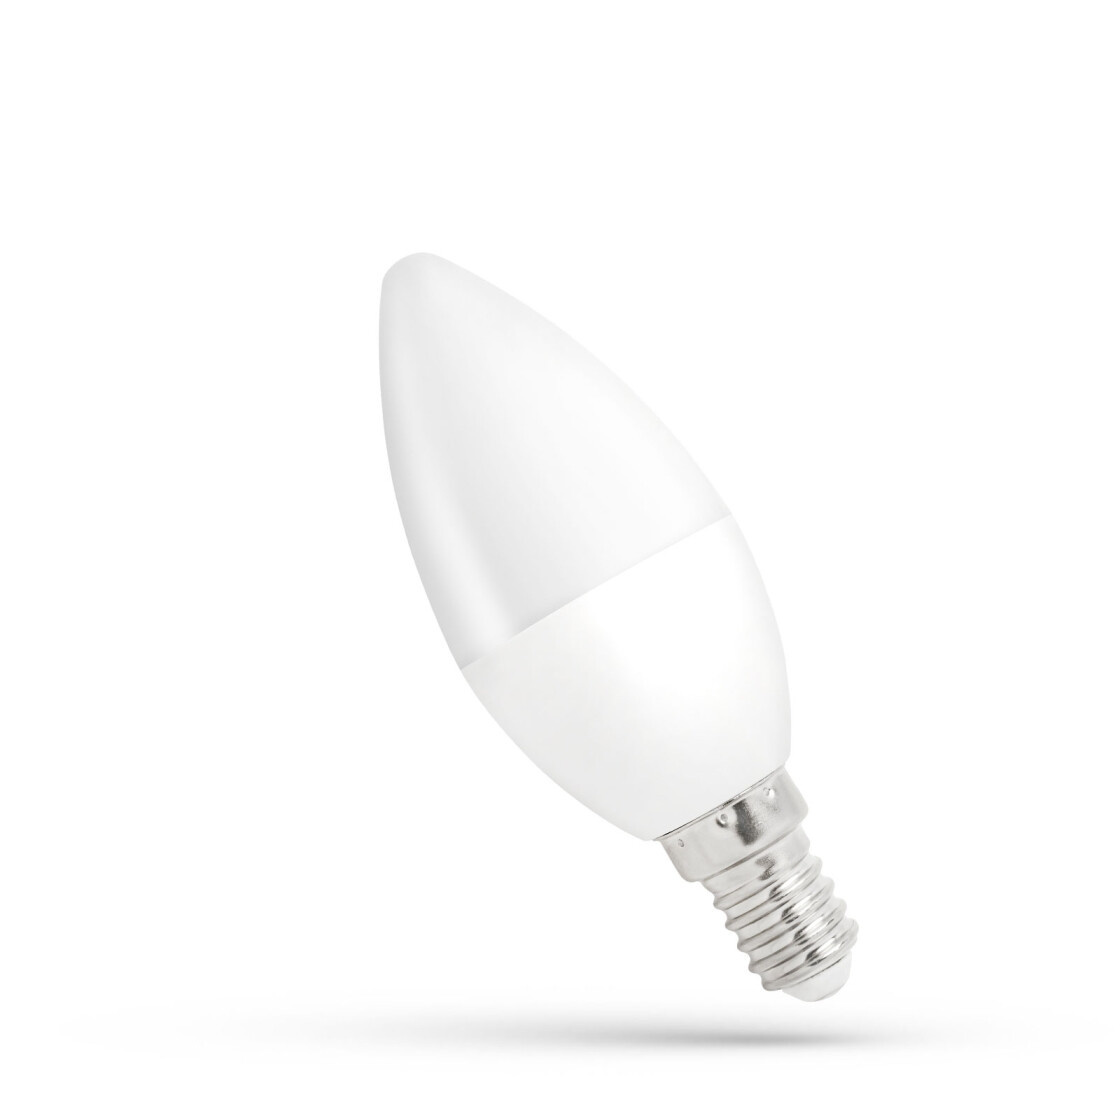 Dimmbare LED Kerzenförmige Fadenlampe - C35 Filament - E14 Fassung 